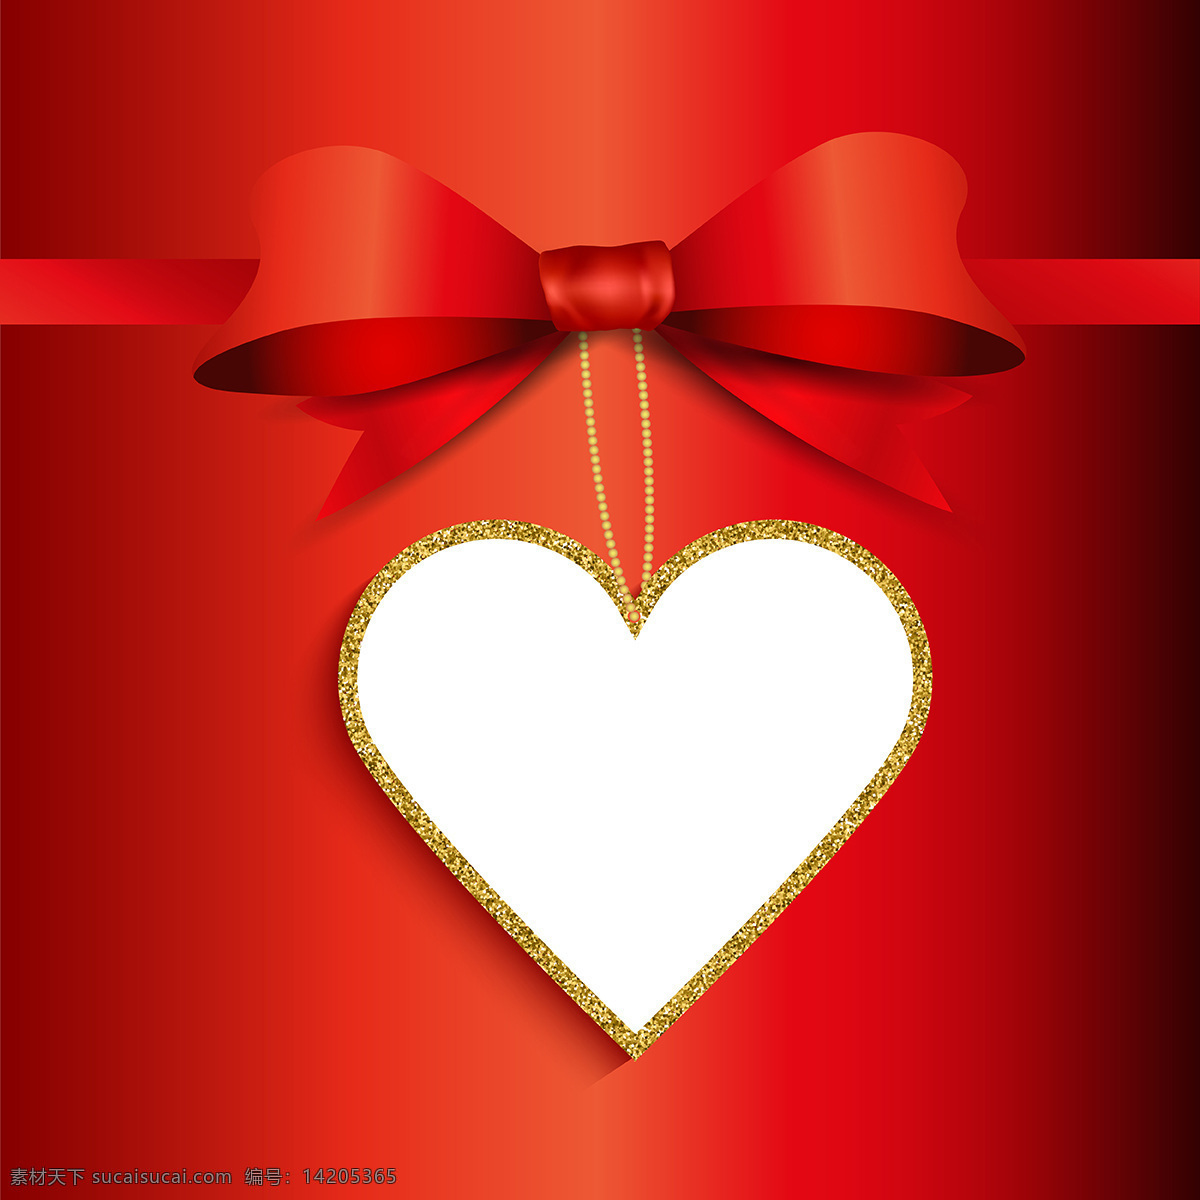 情人节 礼物 背景 心形 闪光 标签 丝带 心 抽象的爱 卡片 红色 蝴蝶结 红色背景 庆祝情人节 假日 夫妇 礼品卡